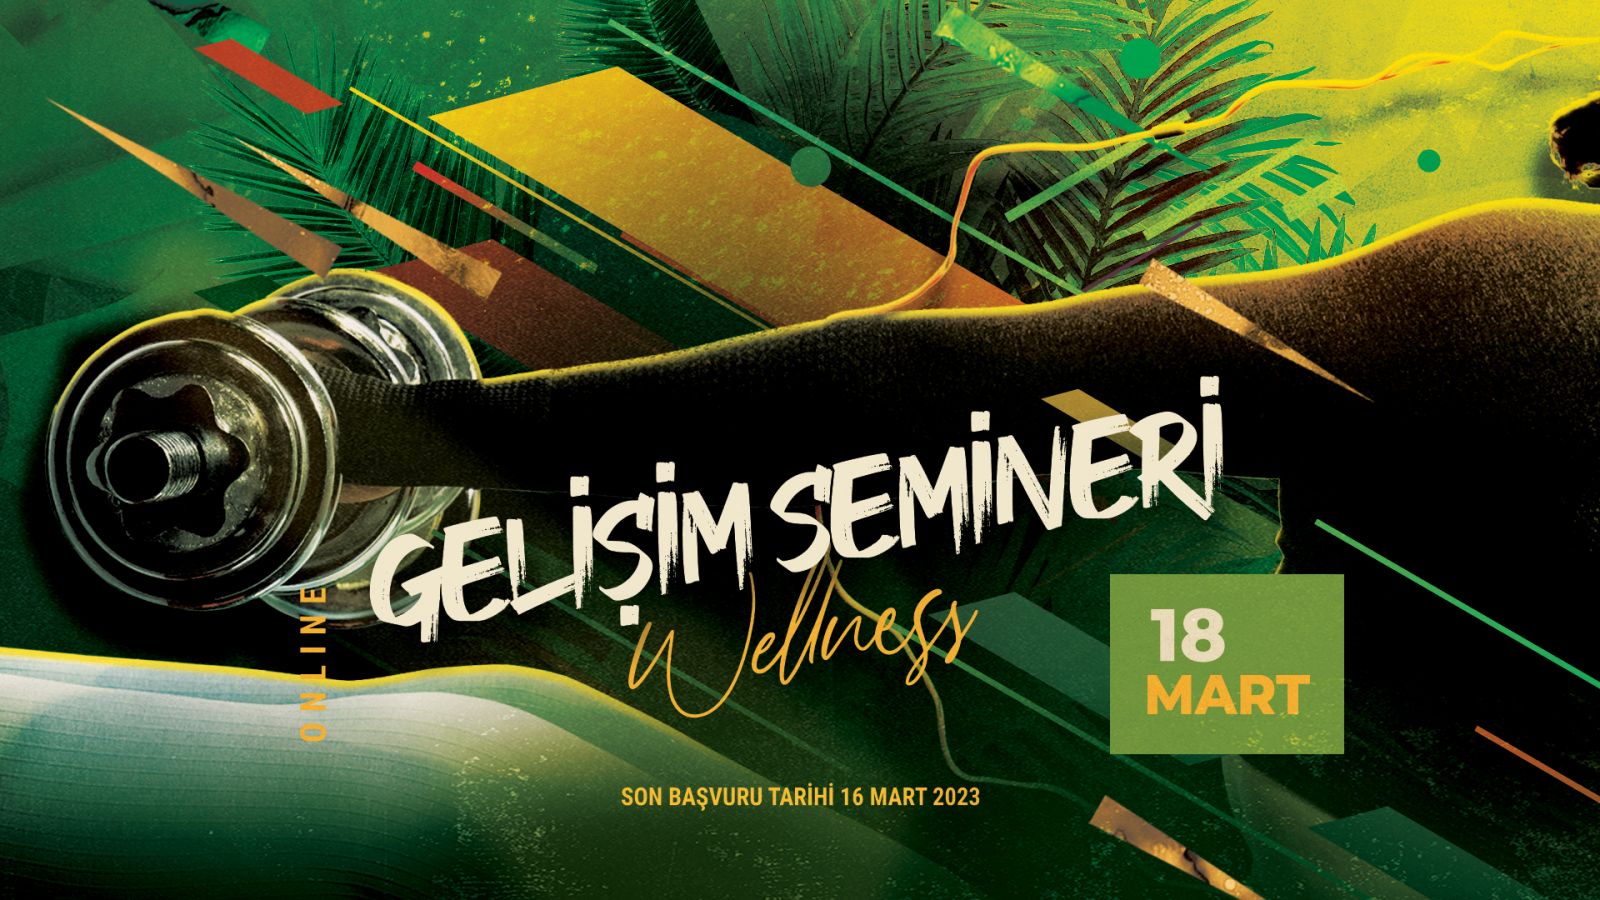 WELLNESS GELİŞİM SEMİNERİ 18 MART 2023